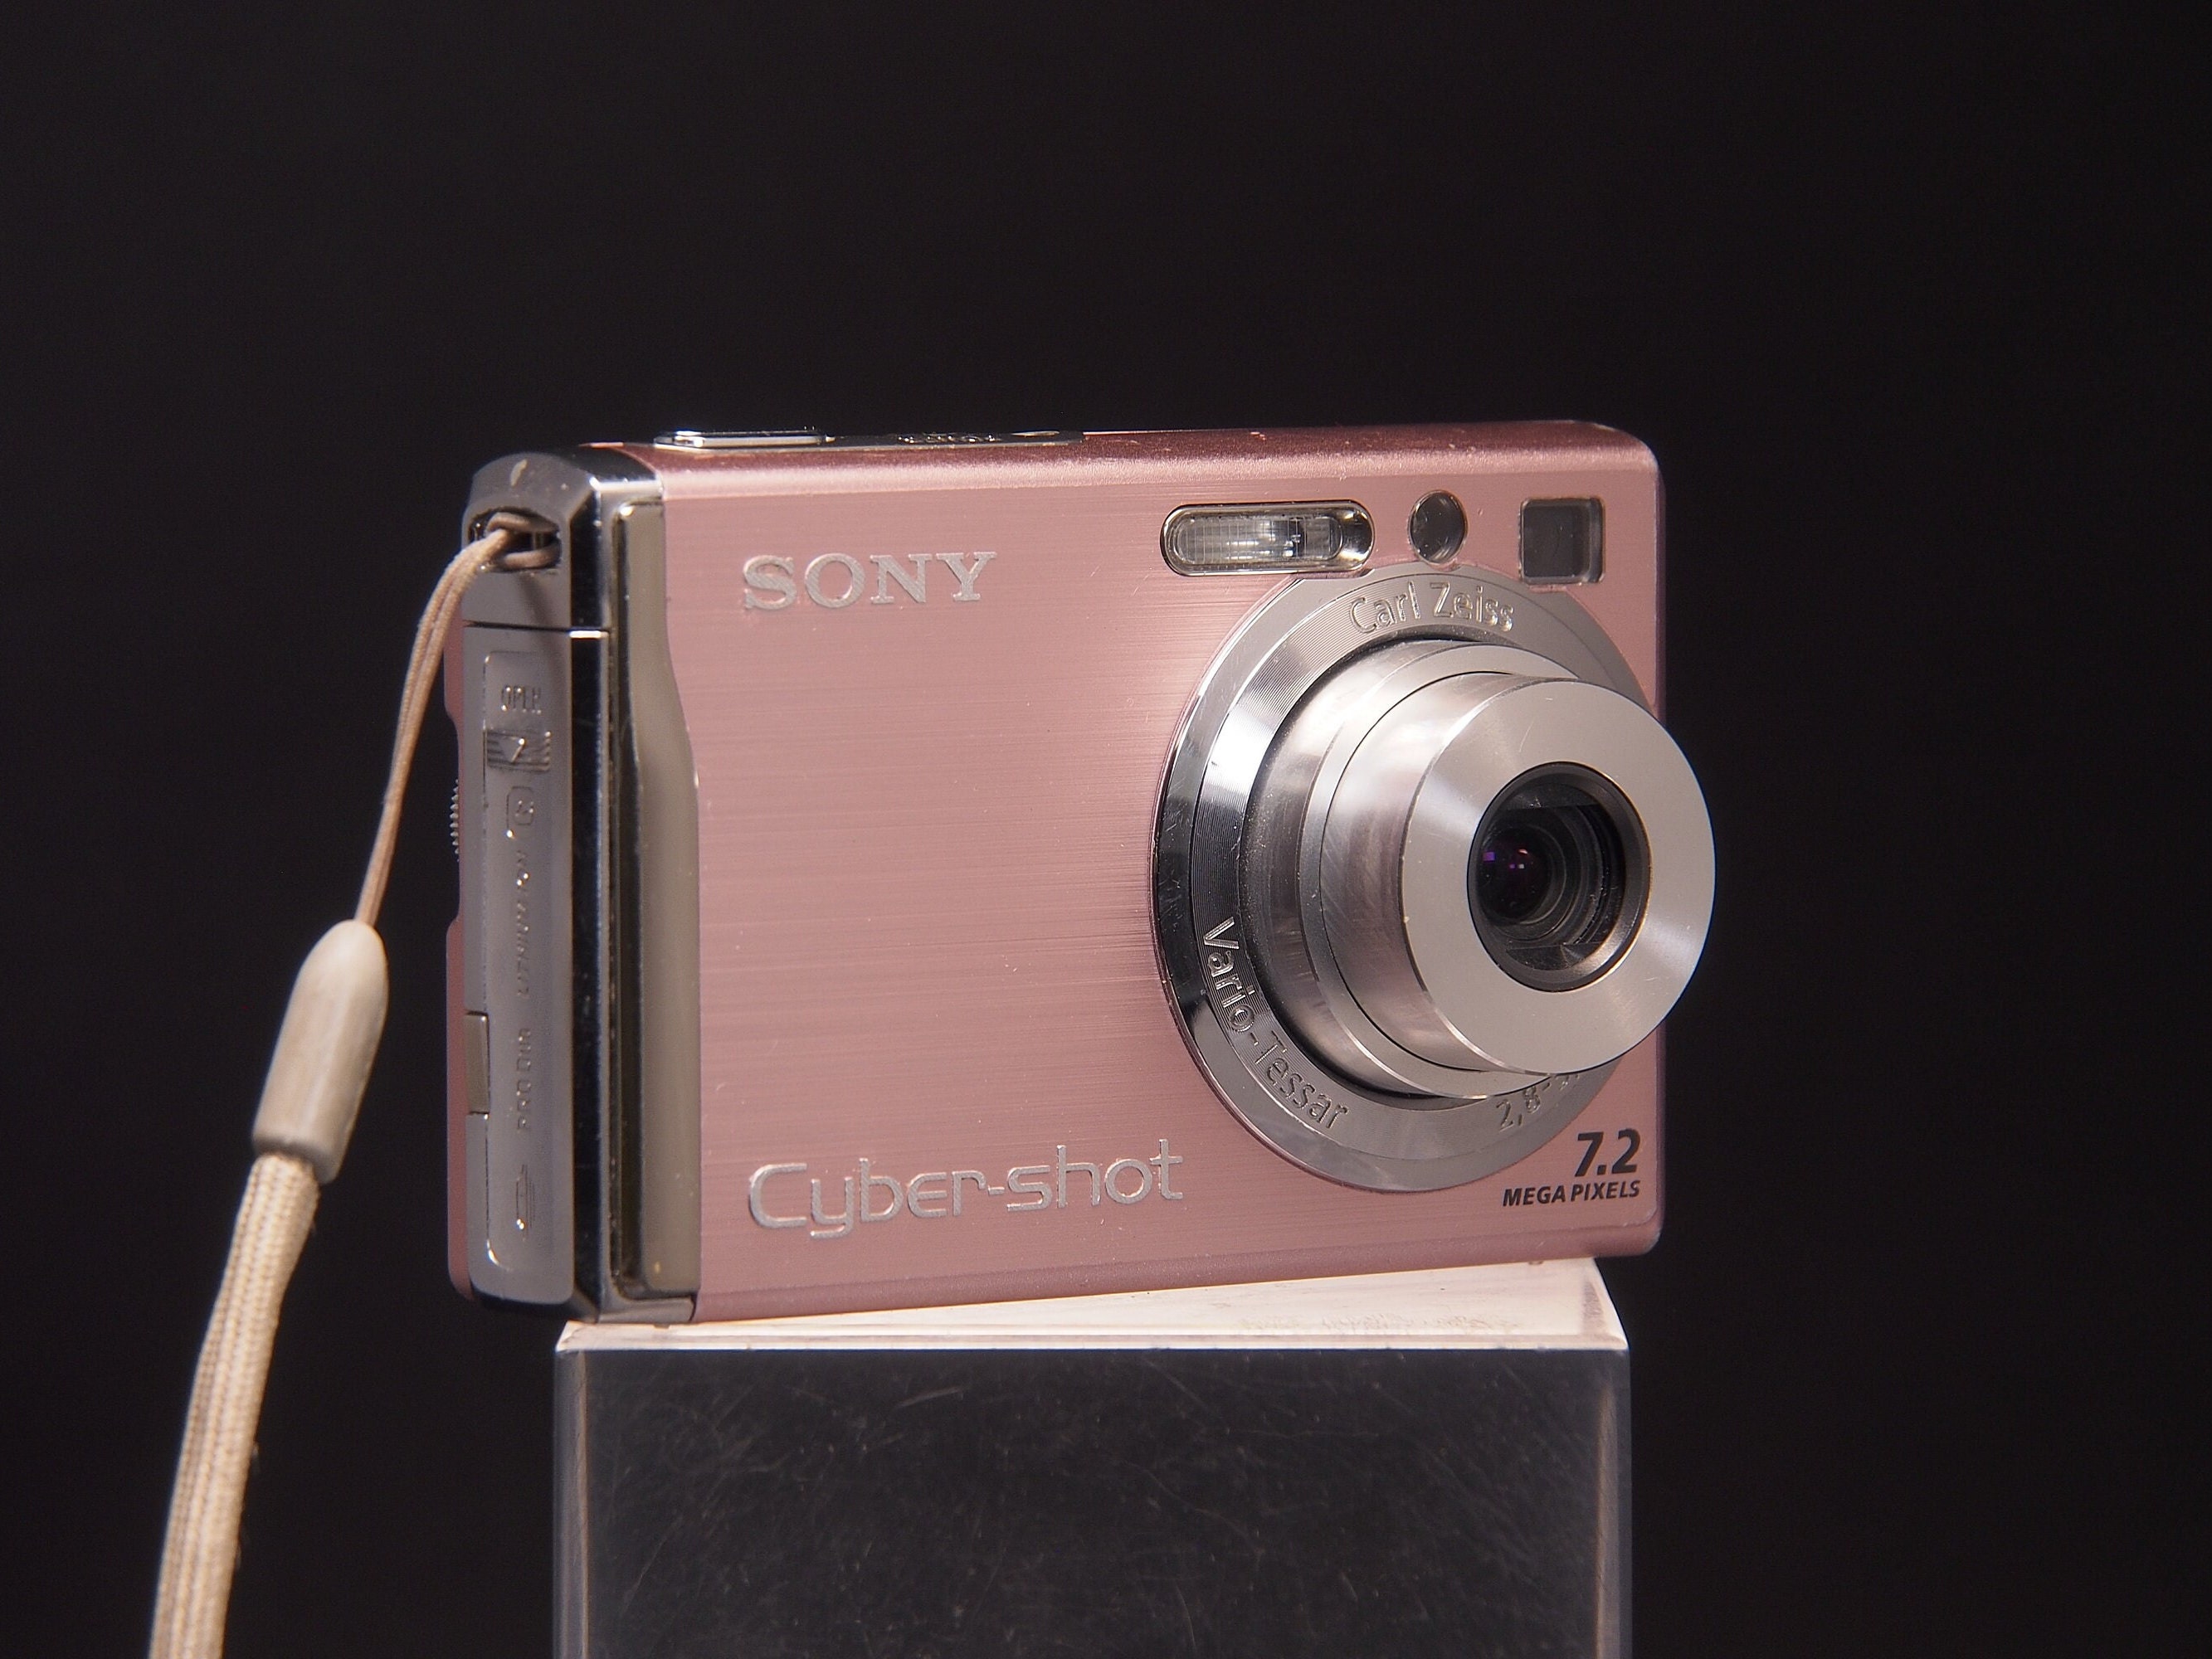  Sony Cybershot DSCW200 12.1MP Digital Camera with 3x